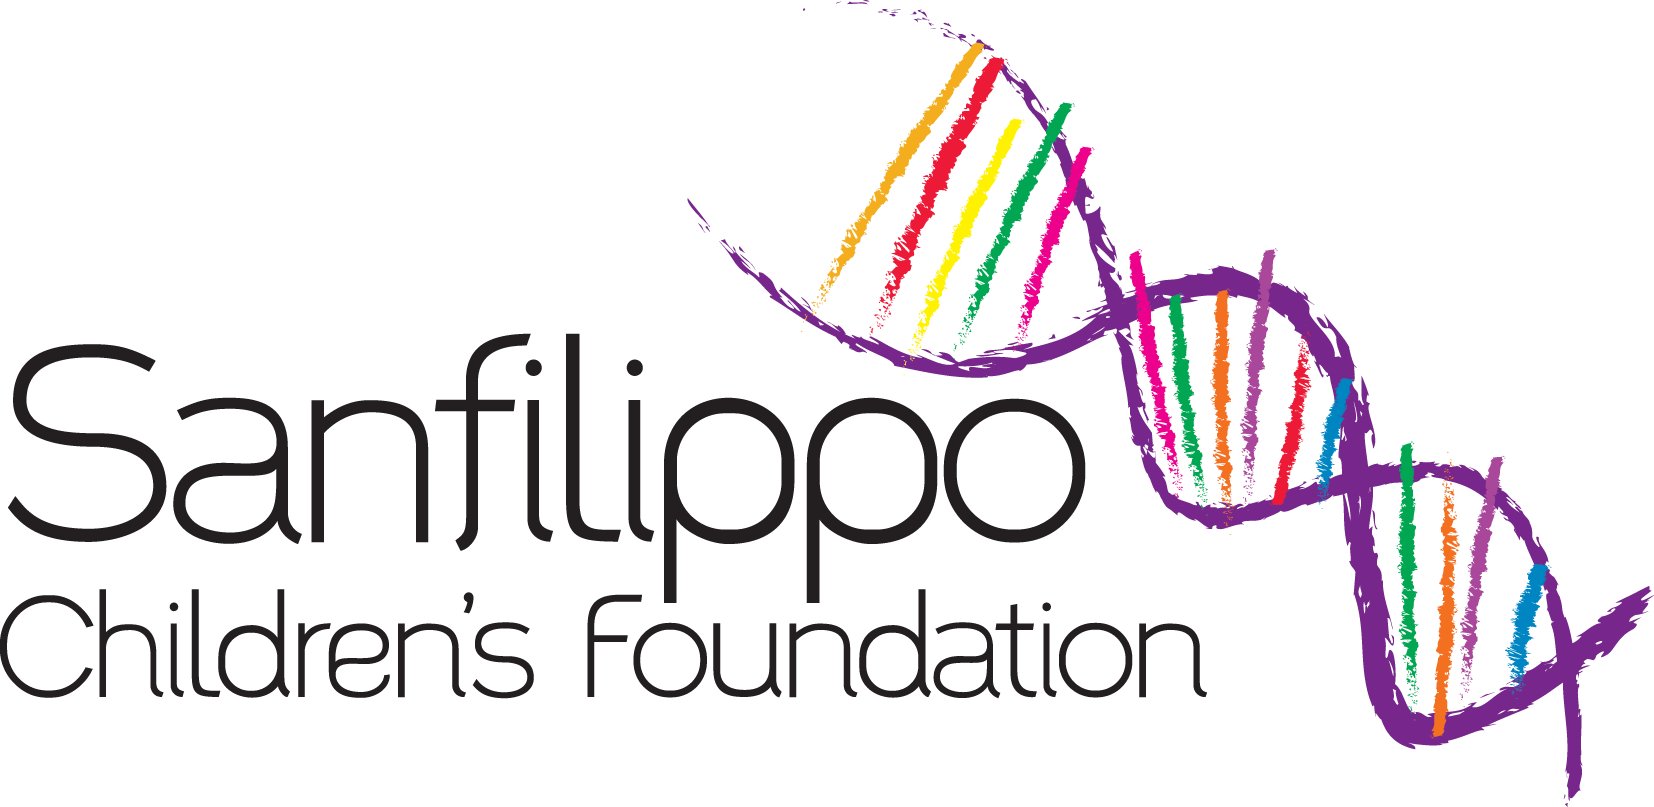 Sanfilippo Children's Foundation logo